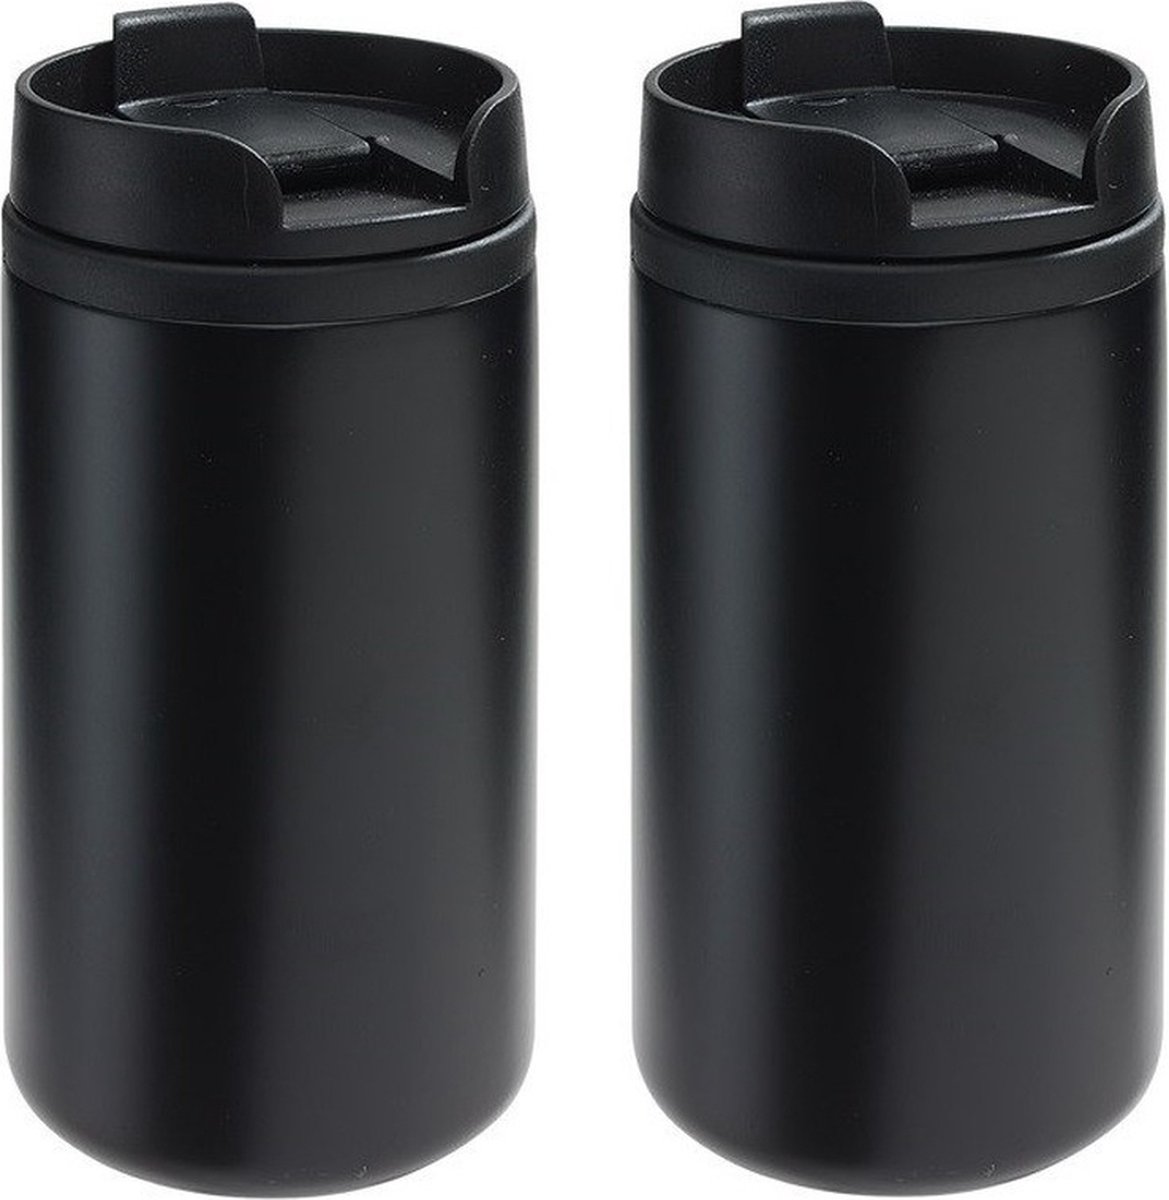 2x Thermosbekers/warmhoudbekers metallic zwart 290 ml - Thermo koffie/thee isoleerbekers dubbelwandig met schroefdop - Merkloos